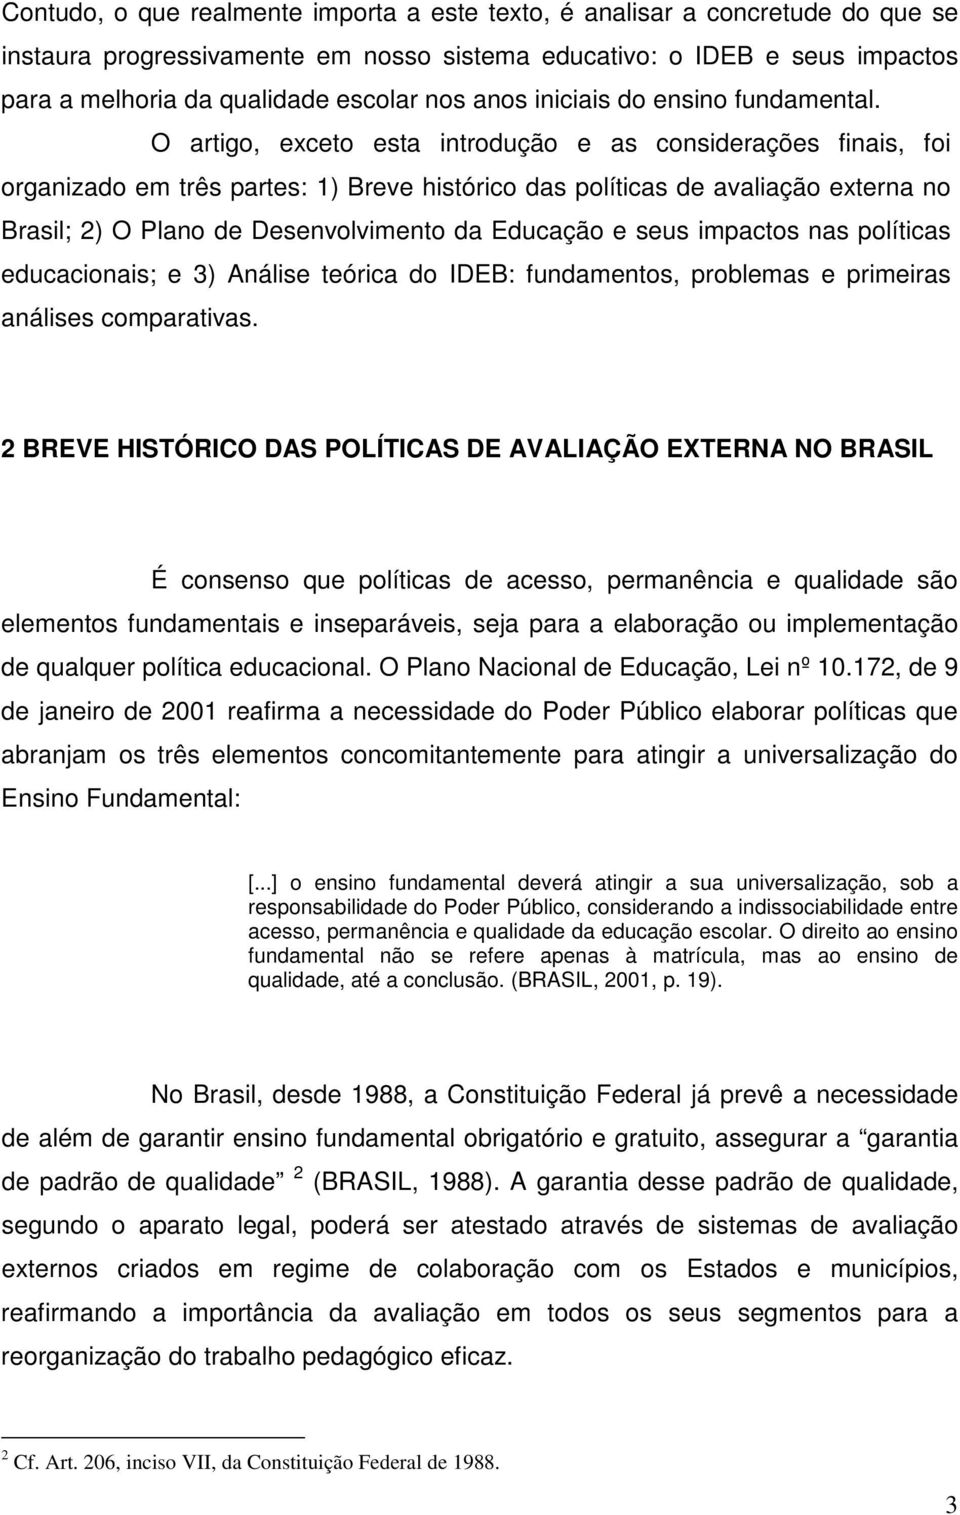 O artigo, exceto esta introdução e as considerações finais, foi organizado em três partes: 1) Breve histórico das políticas de avaliação externa no Brasil; 2) O Plano de Desenvolvimento da Educação e